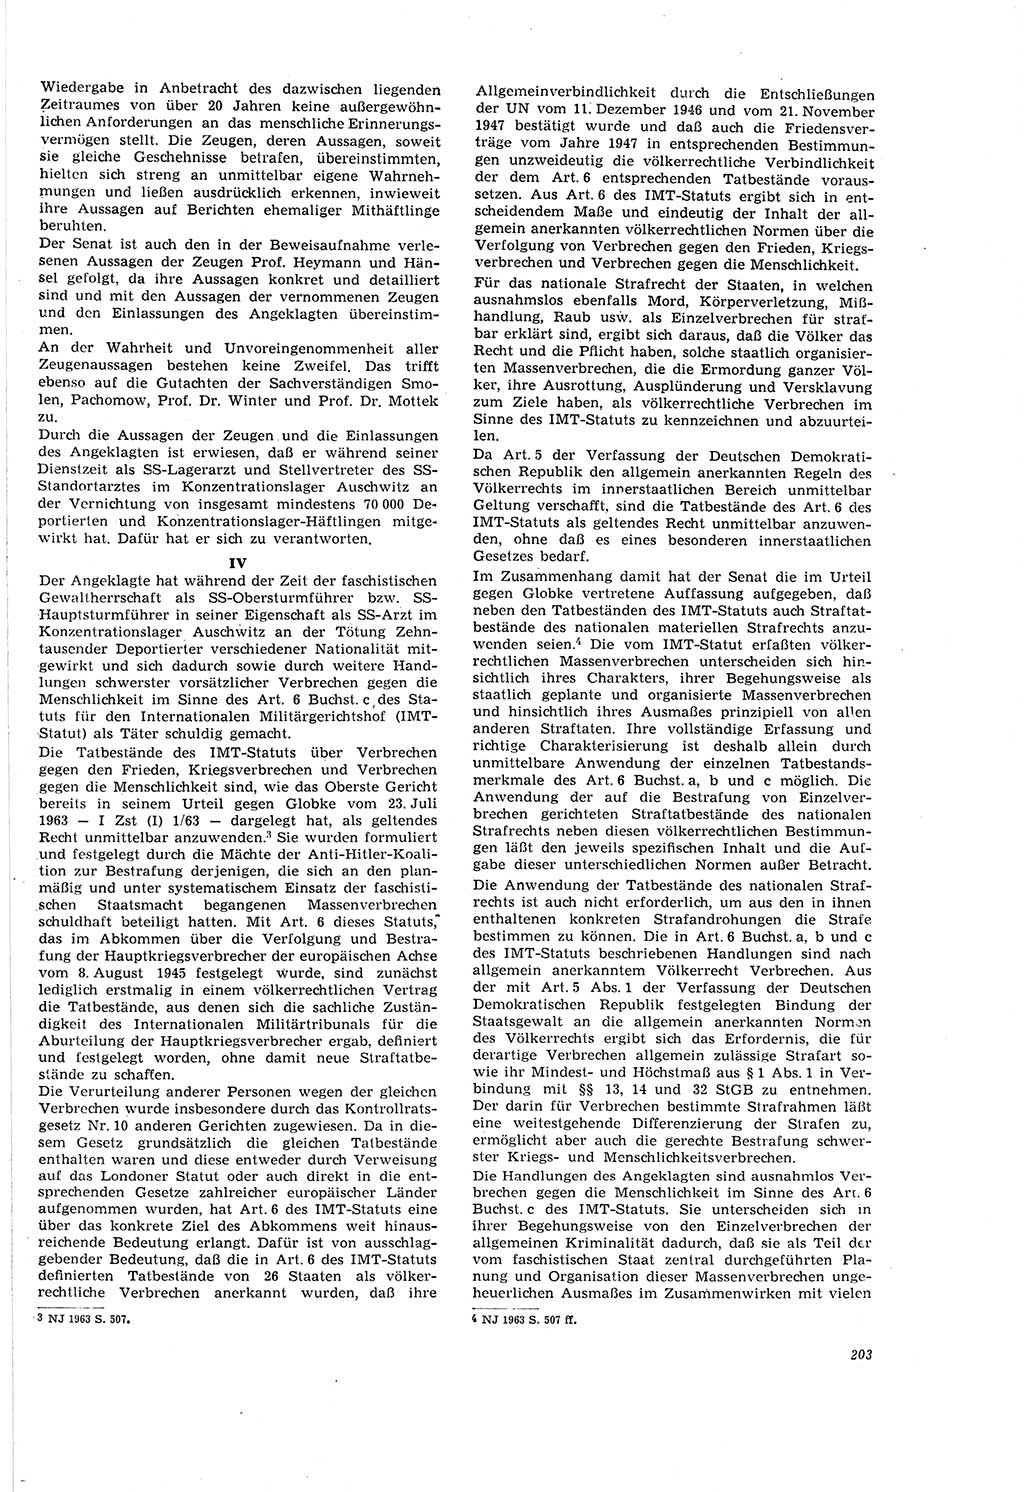 Neue Justiz (NJ), Zeitschrift für Recht und Rechtswissenschaft [Deutsche Demokratische Republik (DDR)], 20. Jahrgang 1966, Seite 203 (NJ DDR 1966, S. 203)